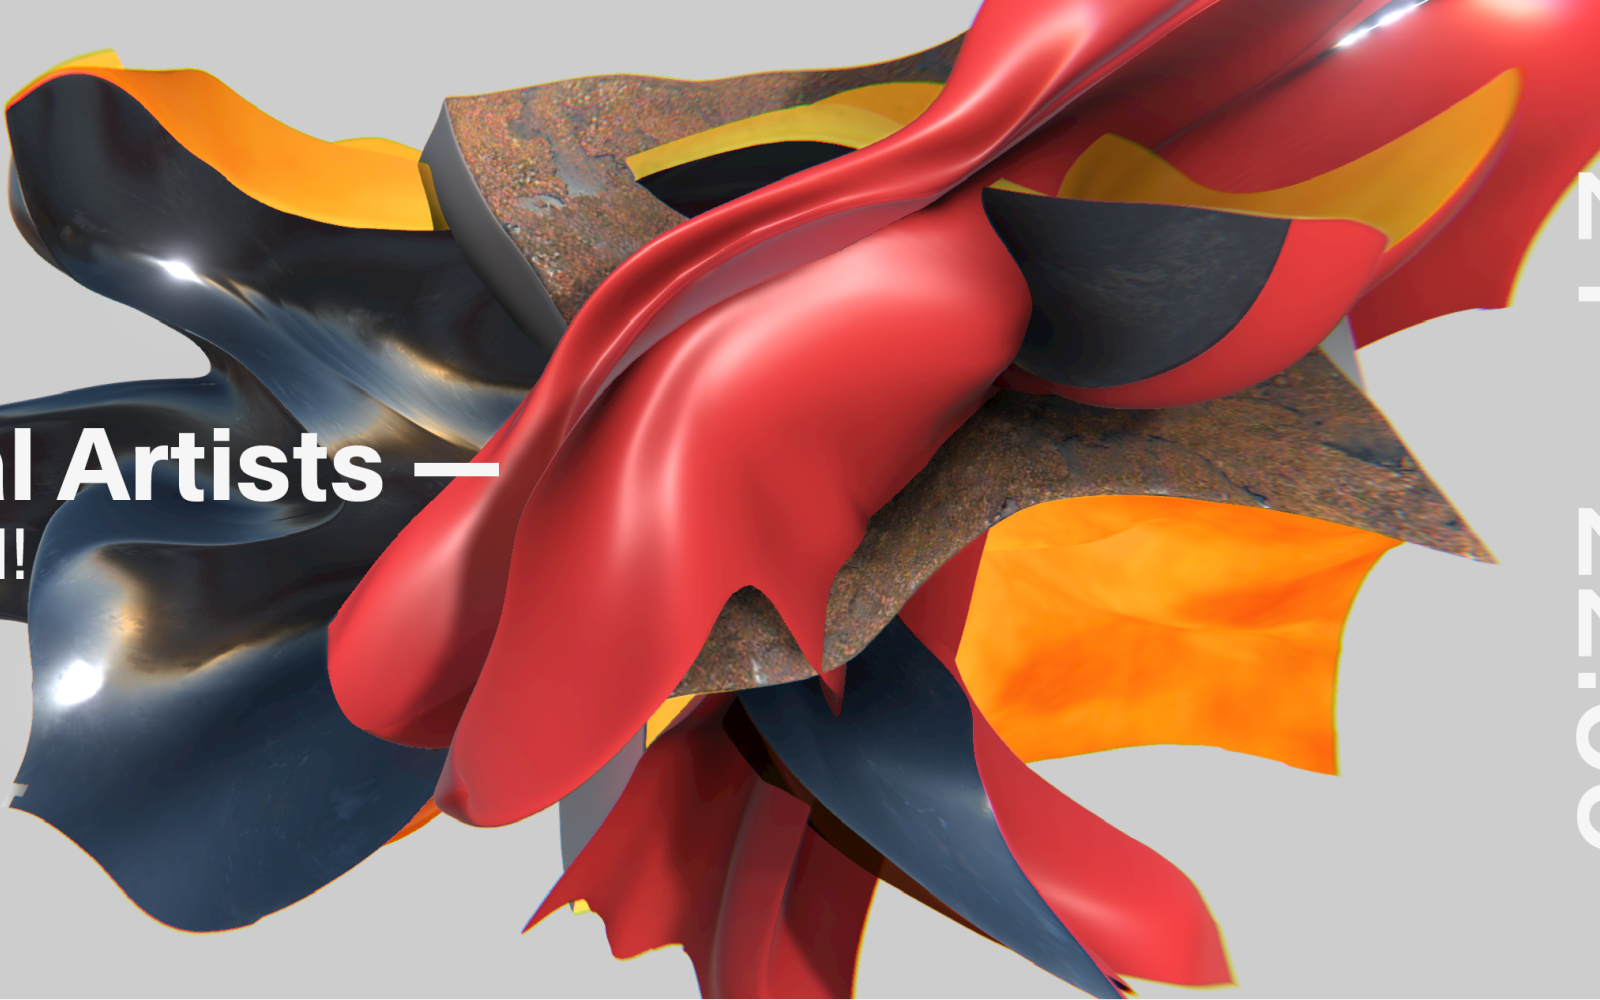 Veranstaltungsplakat: Unity3D for Visual Artists